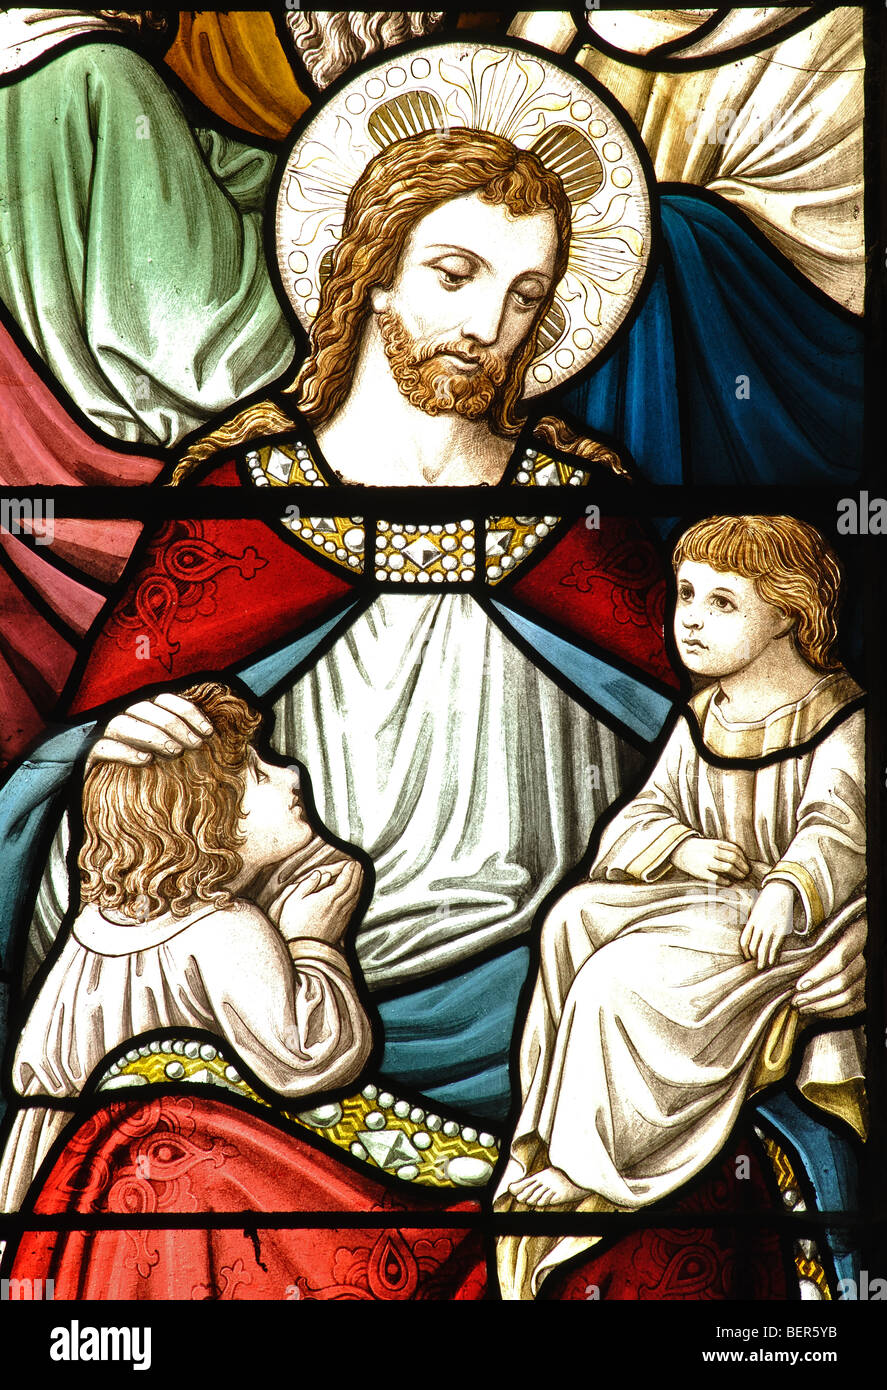 Die kleinen Kinder leiden Glasmalereien in St. Michael und alle Engel Kirche, Appleby Magna, Leicestershire, England, Großbritannien Stockfoto